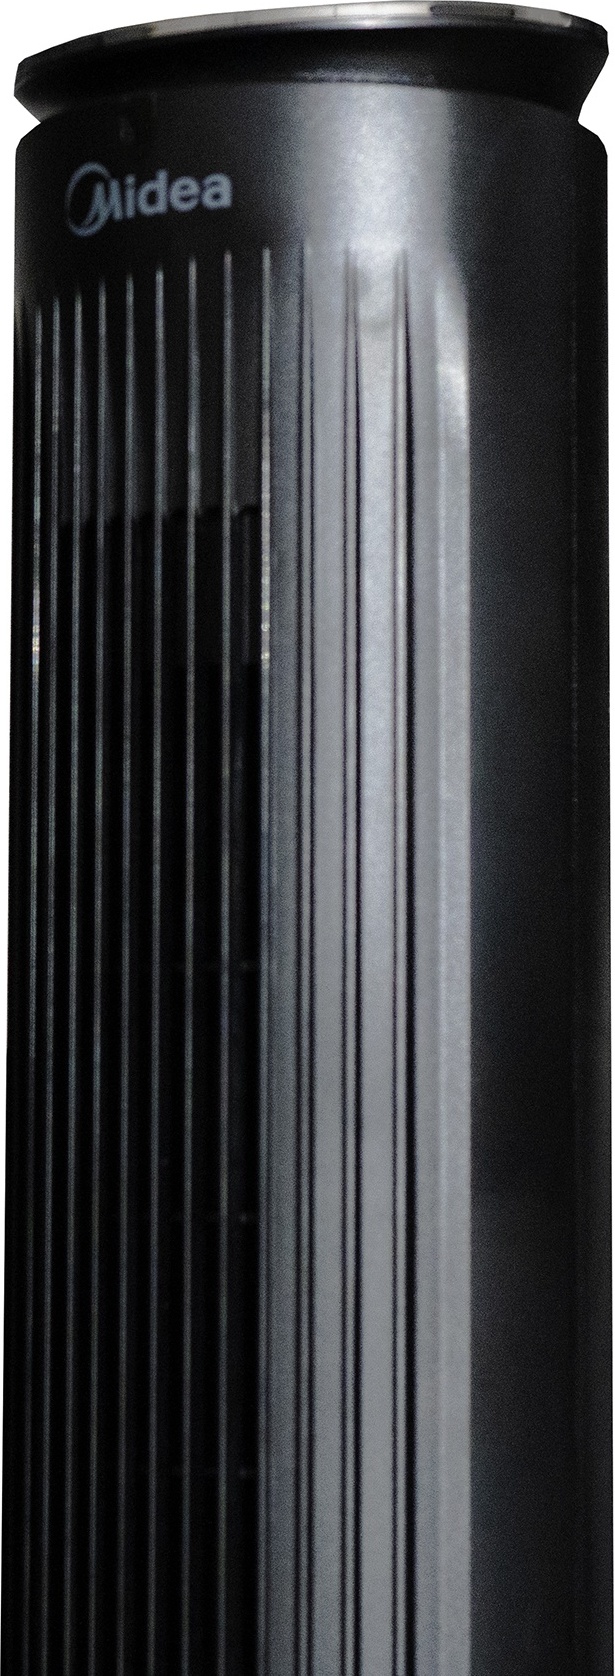 Купить Вентилятор MIDEA FZ10-21ARB колонный